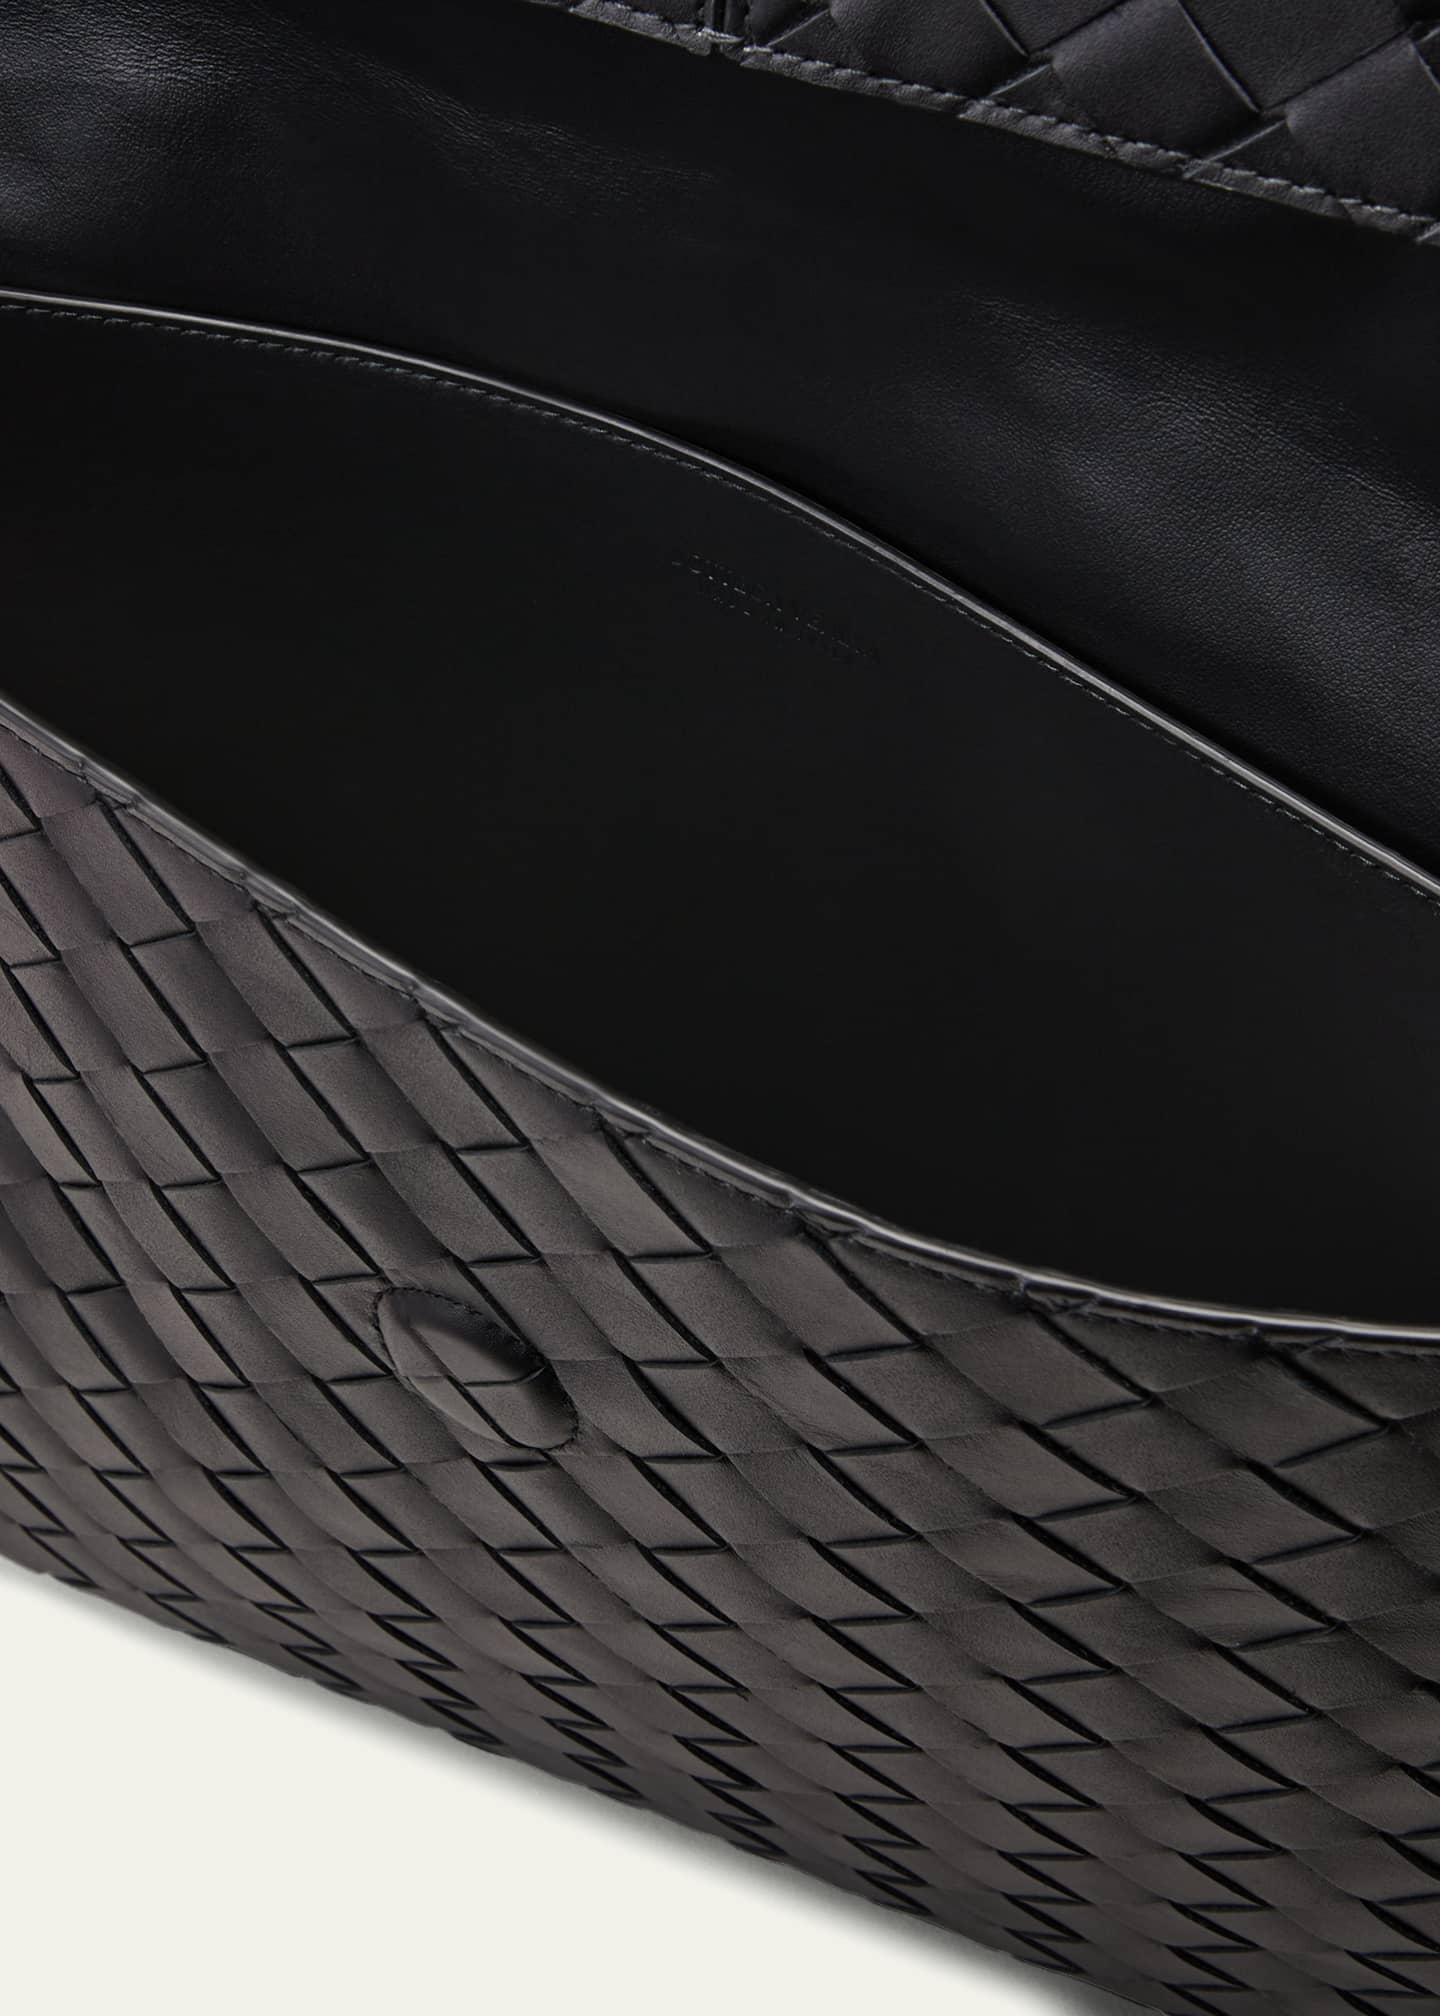 Bottega Veneta - Intrecciato Leather Pouch - Mens - Black